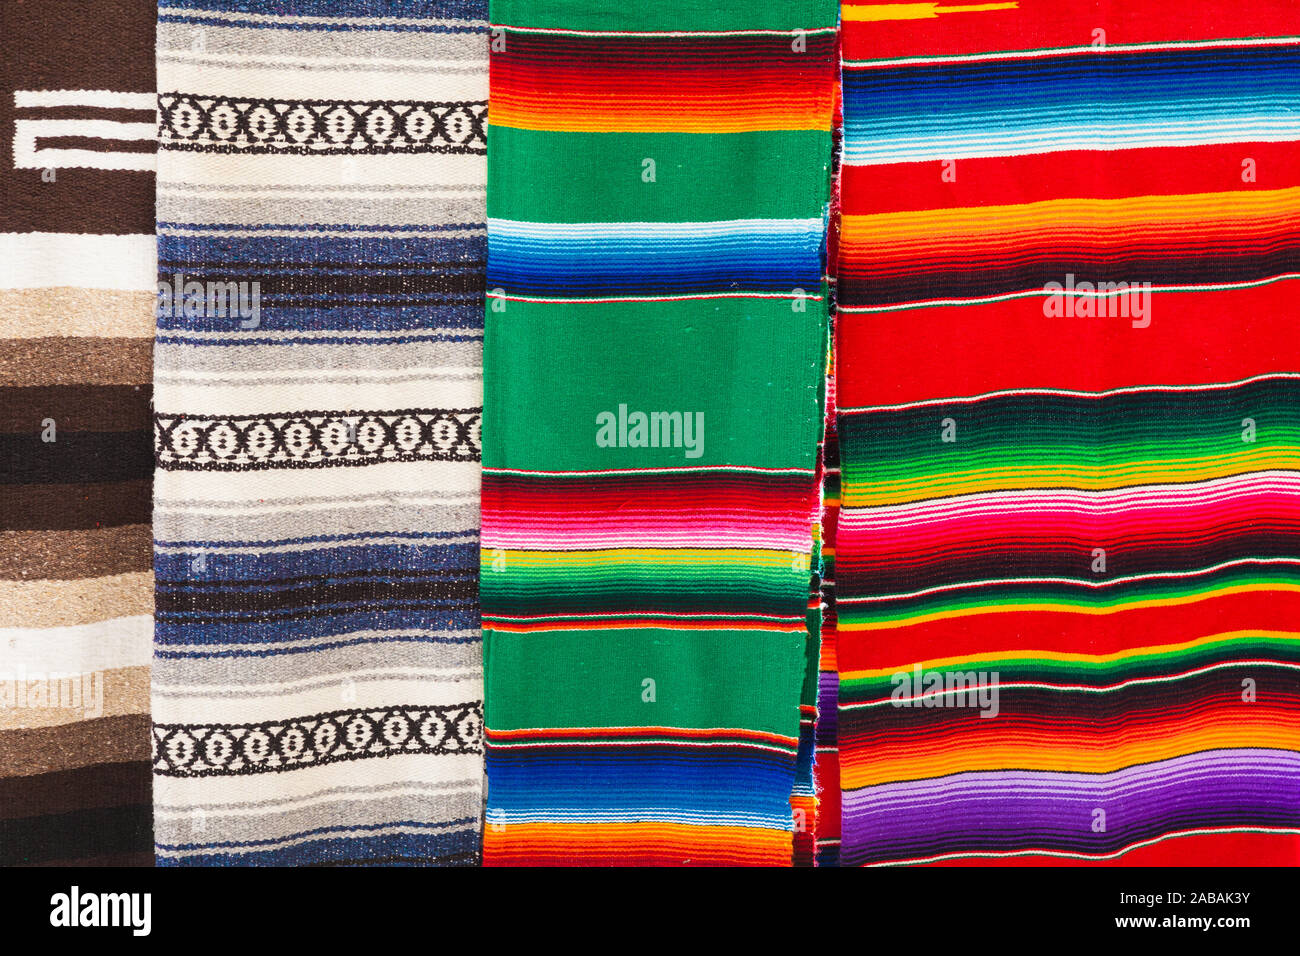 Mercato di souvenir con motivi di Chichen Itza sito culturale sulla penisola dello Yucatan del Messico Foto Stock